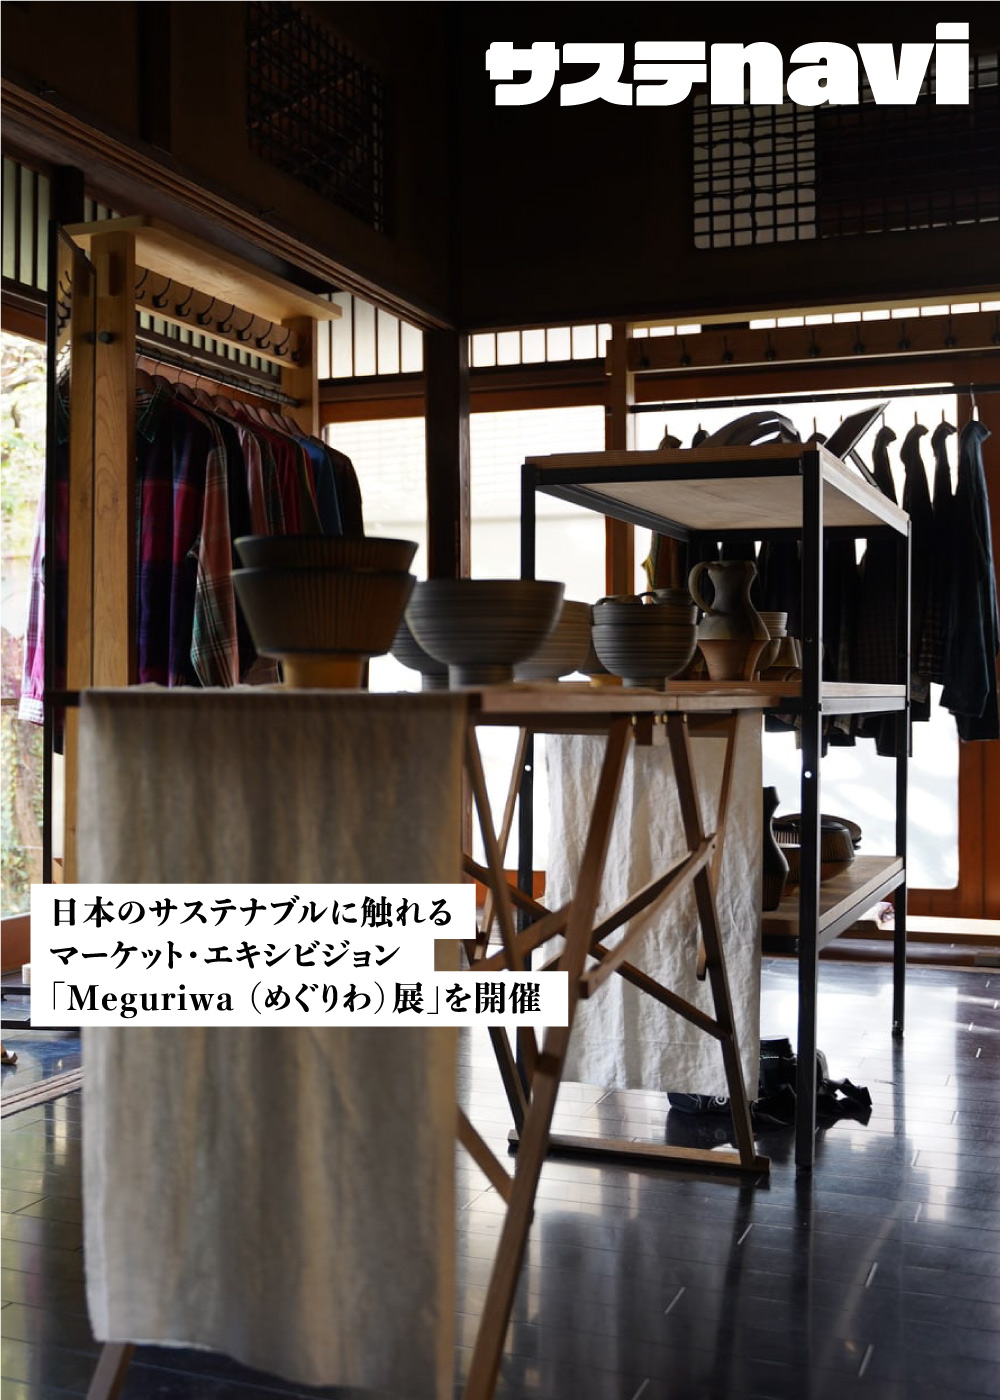 日本のサステナブルに触れるマーケット・エキシビジョン「Meguriwa （めぐりわ）展」を開催